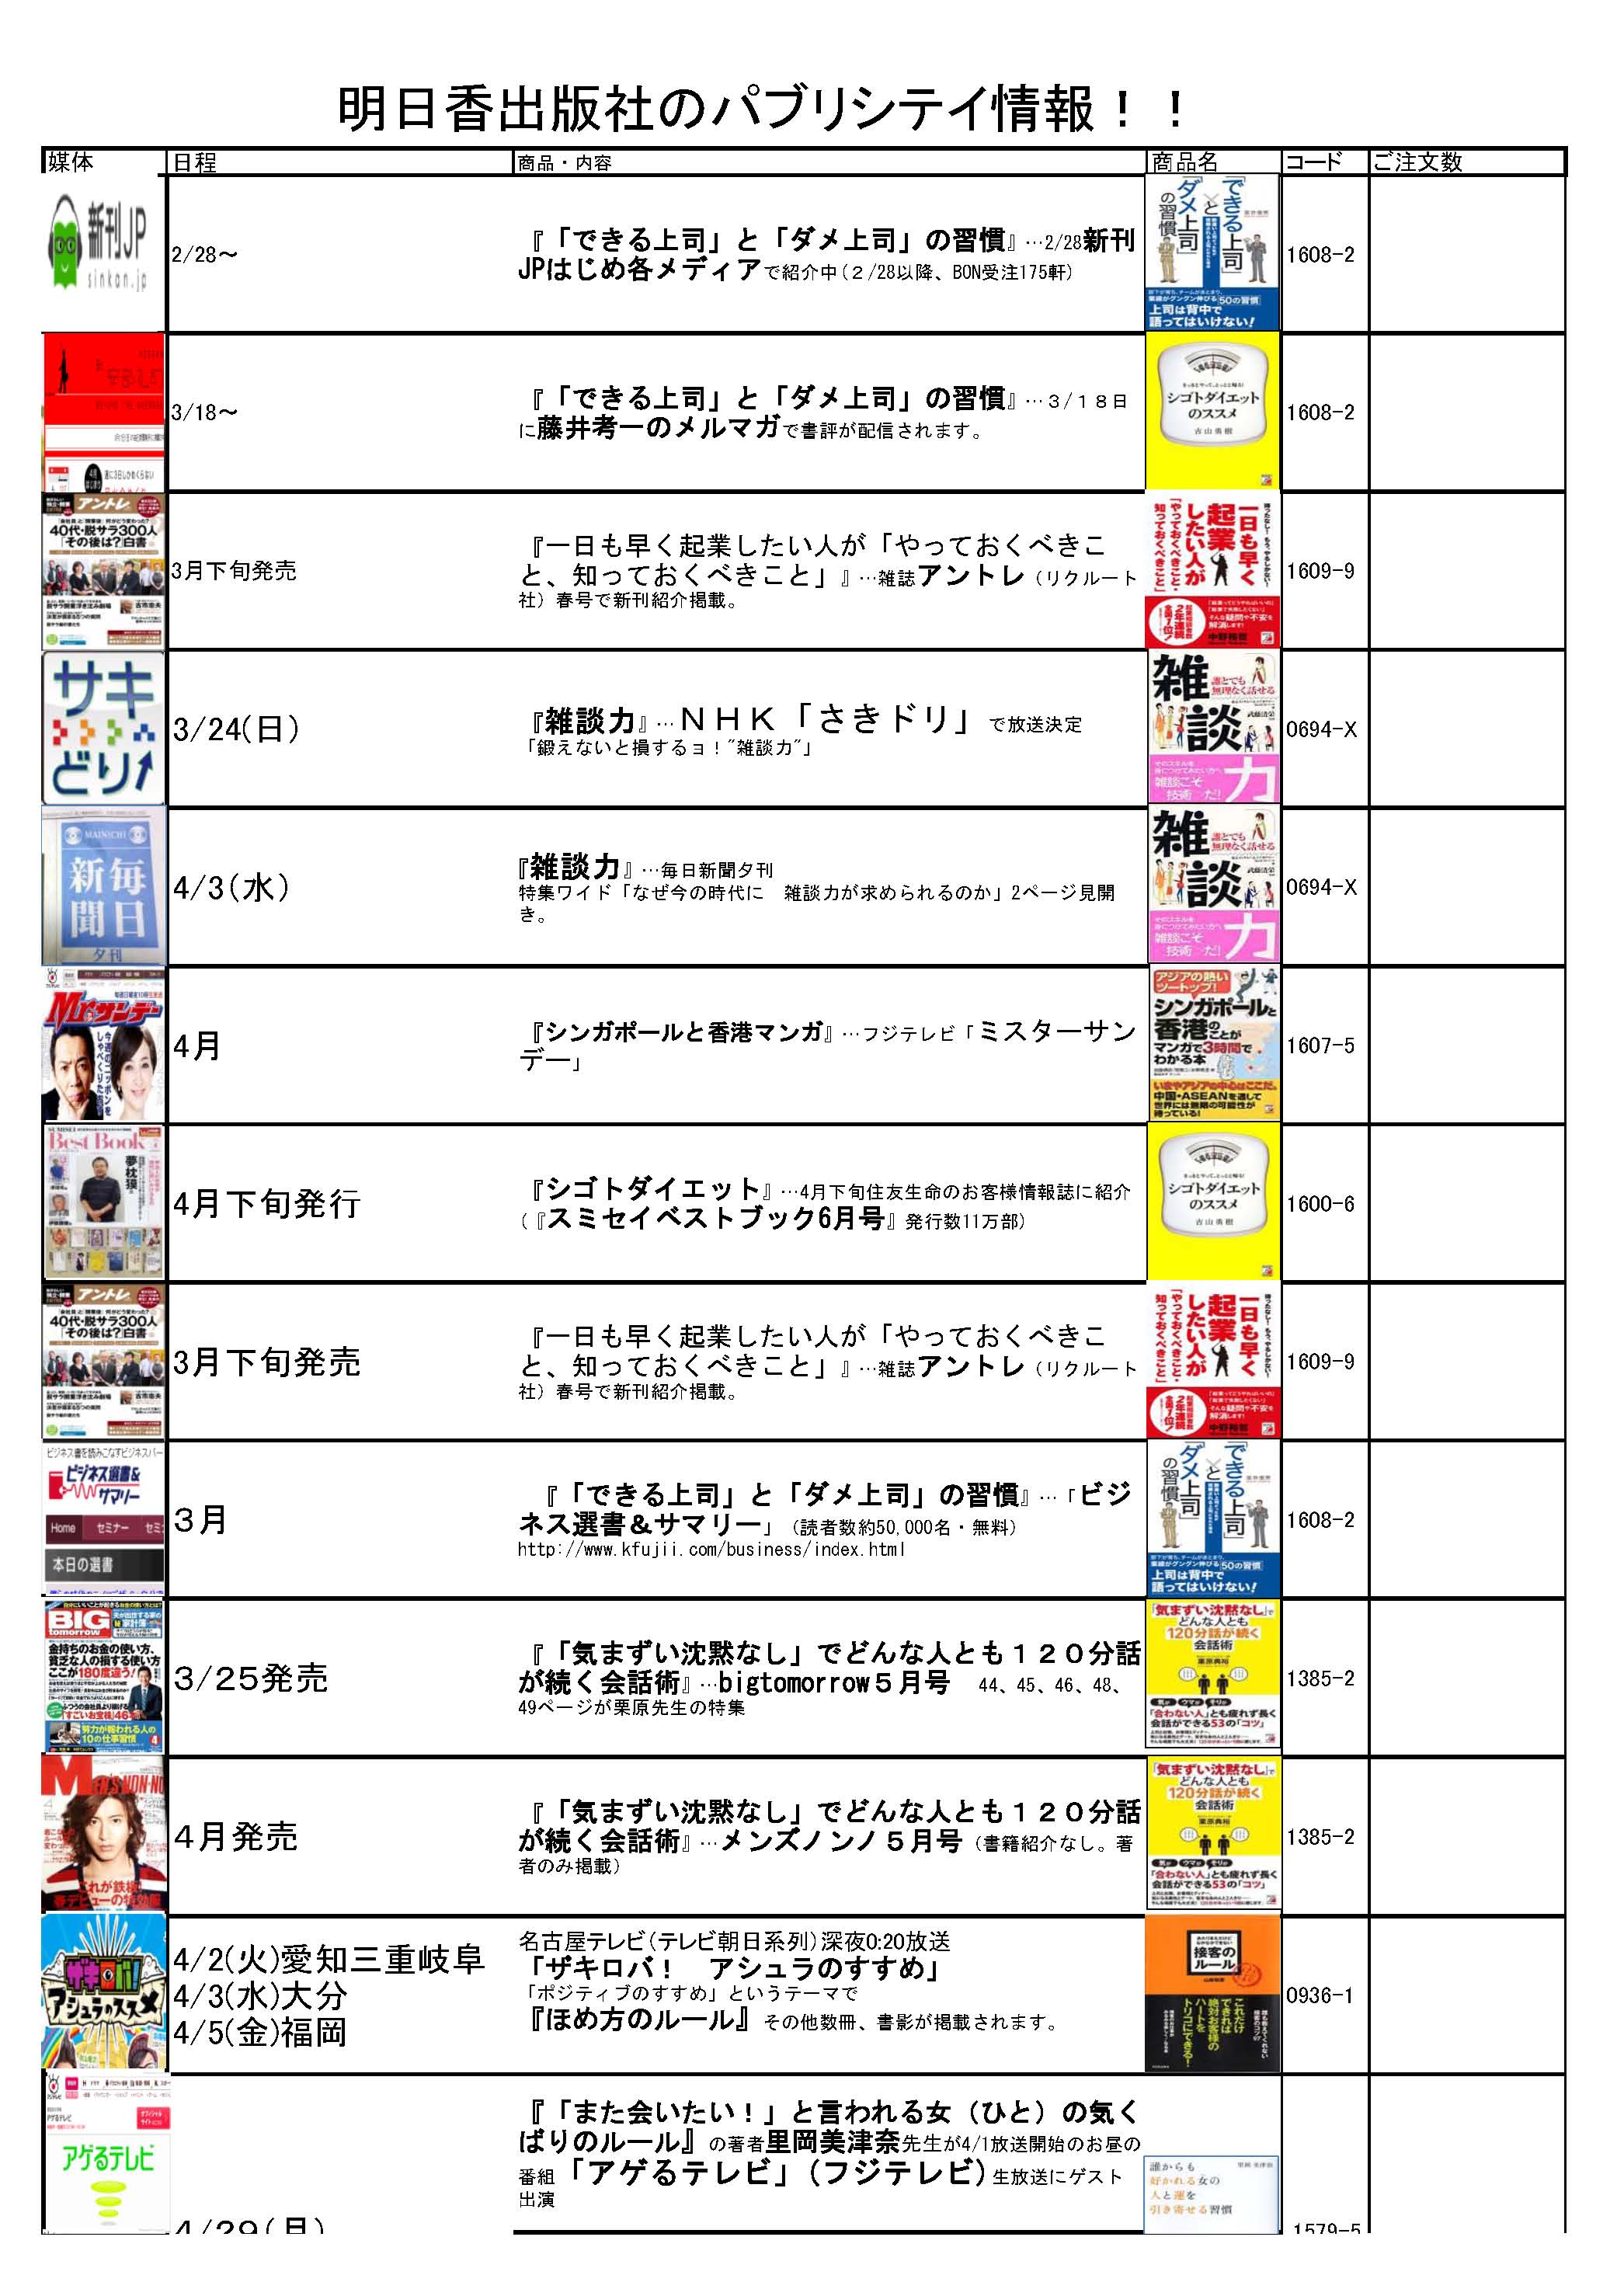 http://www.asuka-g.co.jp/president_blog/images/%E3%83%91%E3%83%96%E6%83%85%E5%A0%B12013%E5%B9%B43%E6%9C%88_%E3%83%9A%E3%83%BC%E3%82%B8_1.jpg